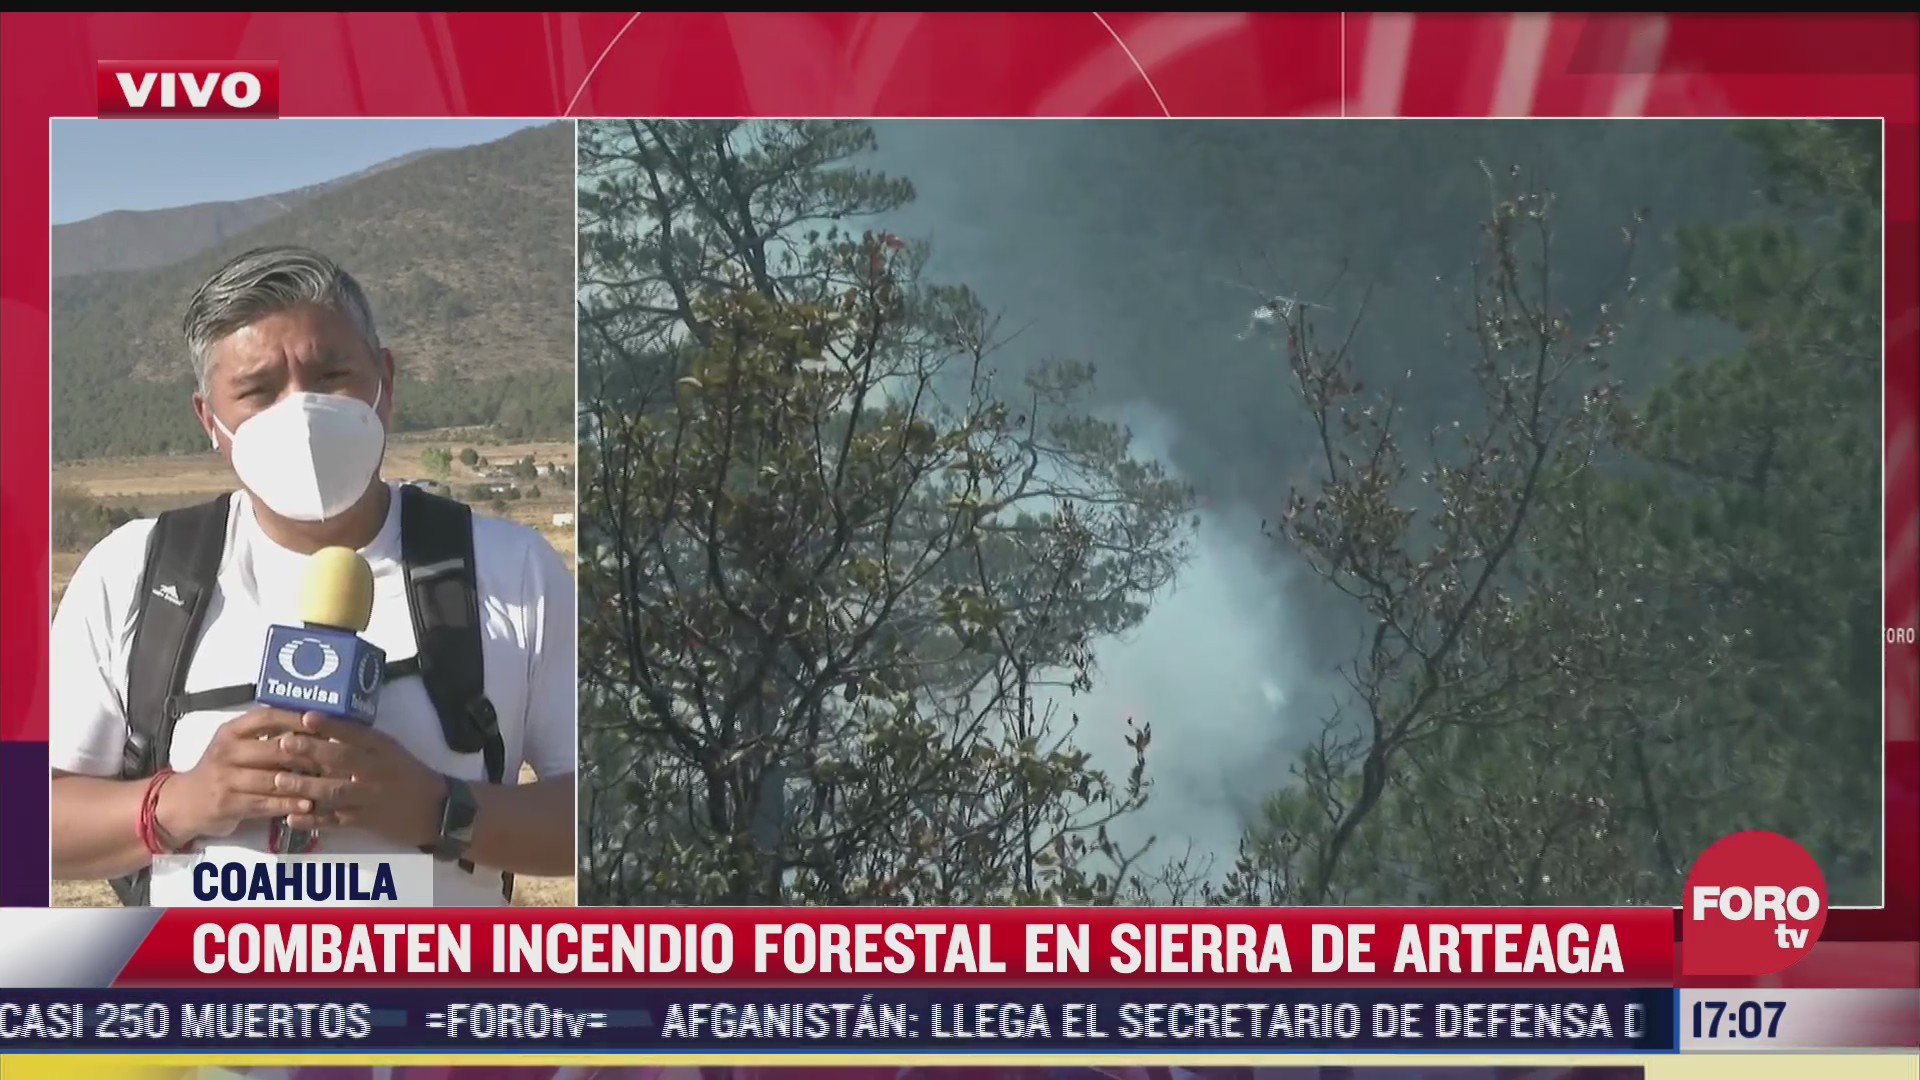 brigadistas combaten incendio en la sierra de arteaga en coahuila